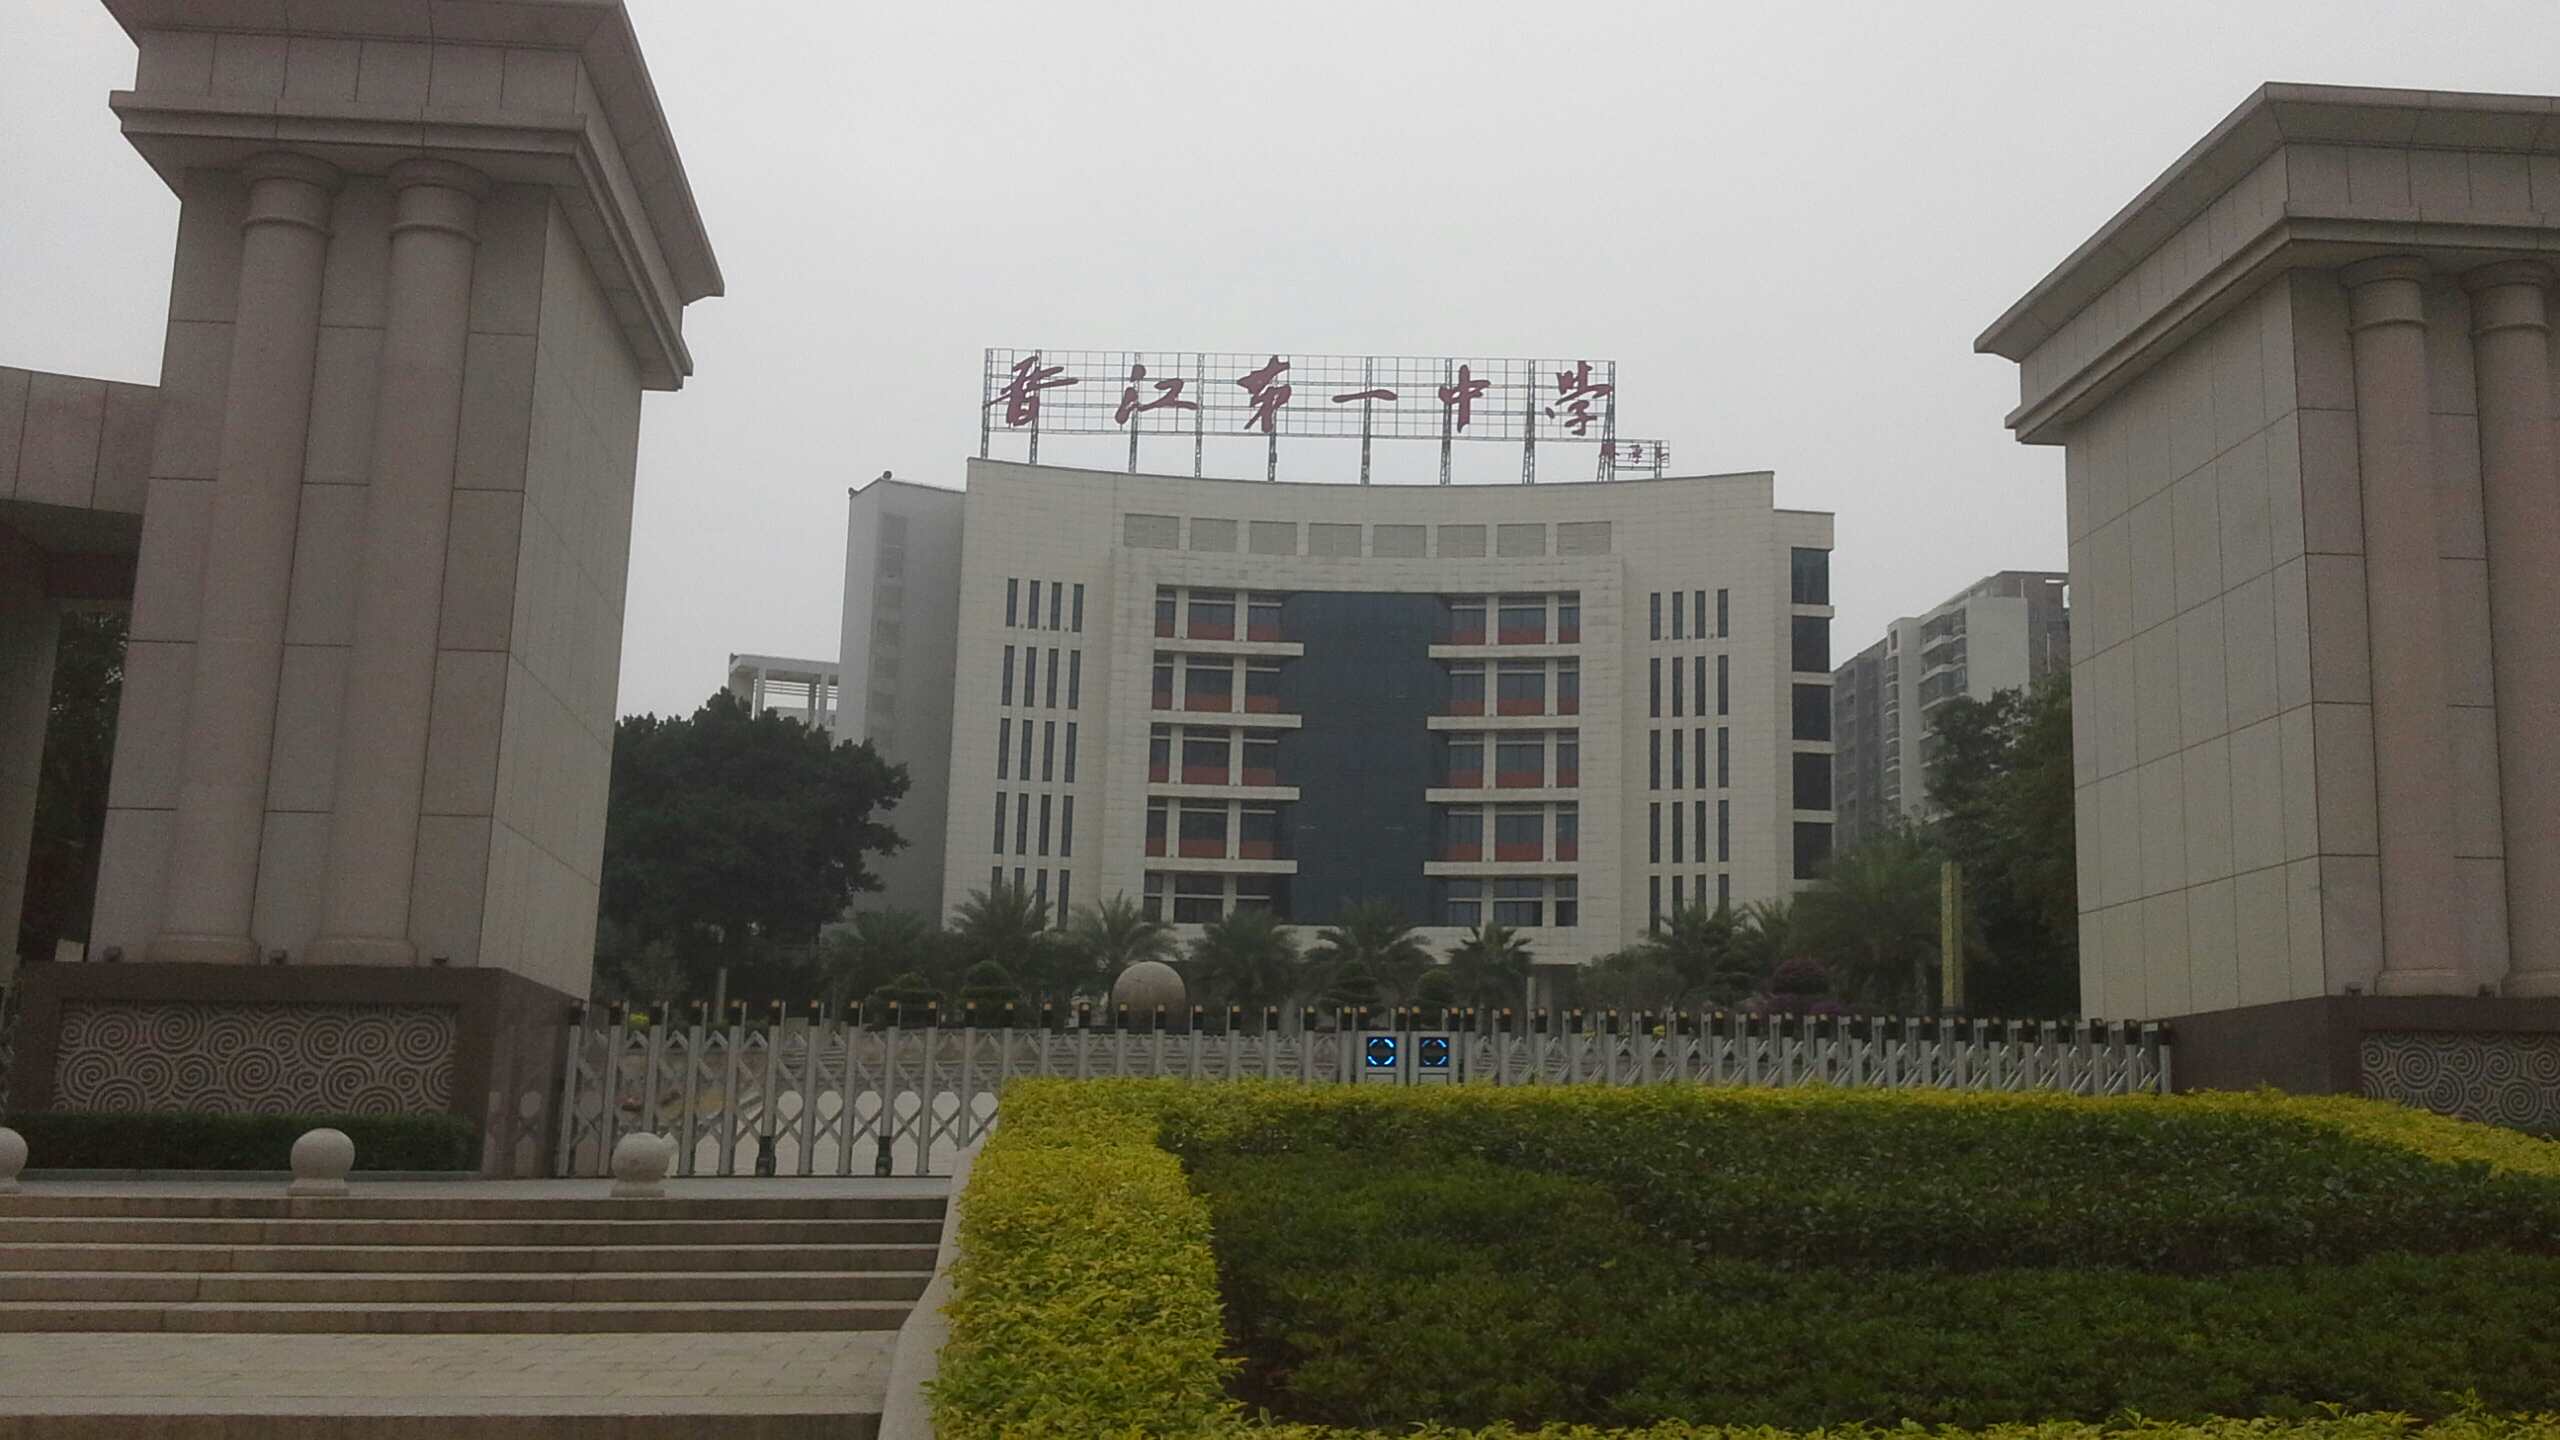 晋江市第一中学地图图片